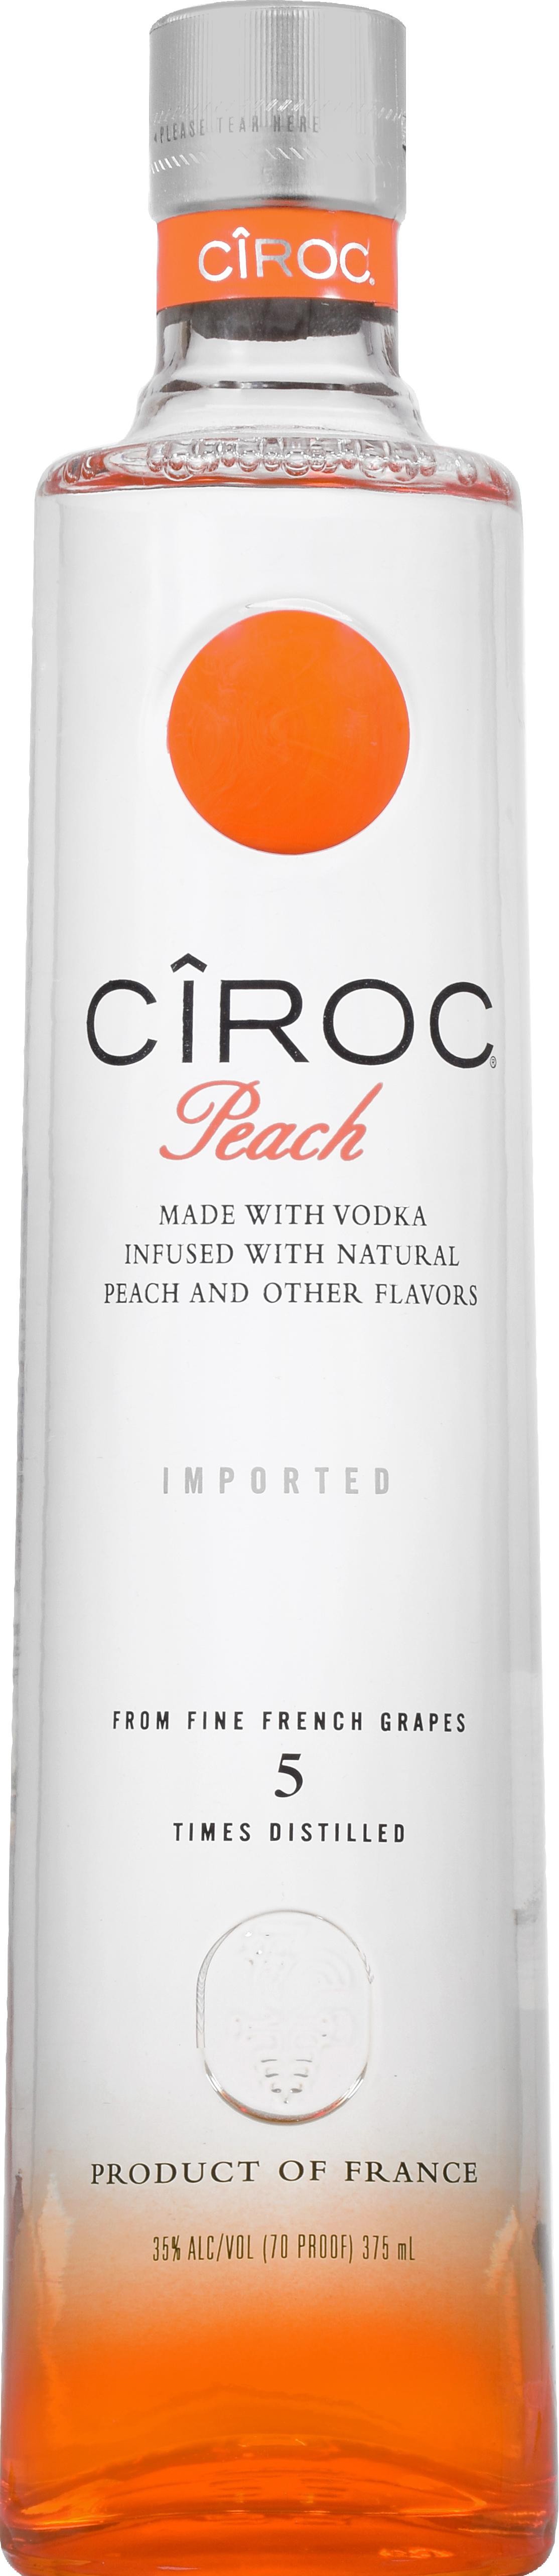 CIROC CROC Peach Flavored Vodka - 375ml Bottle